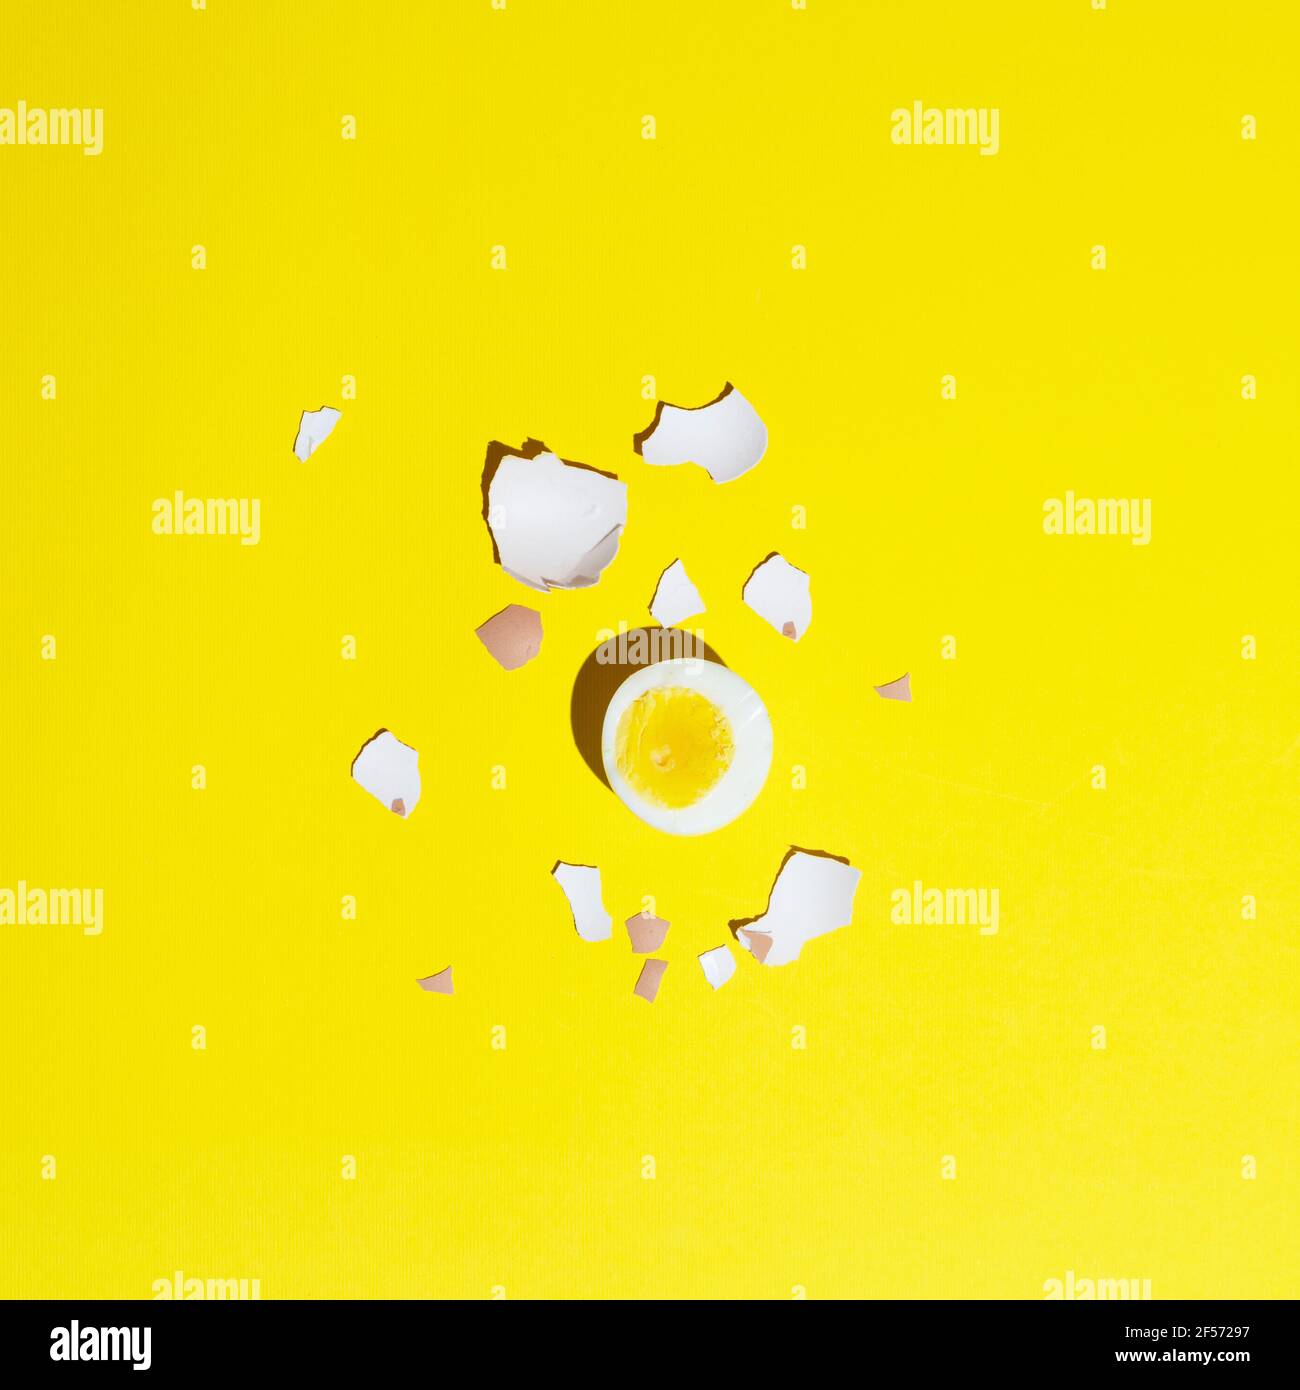 huevos duros sobre una superficie amarilla Foto de stock